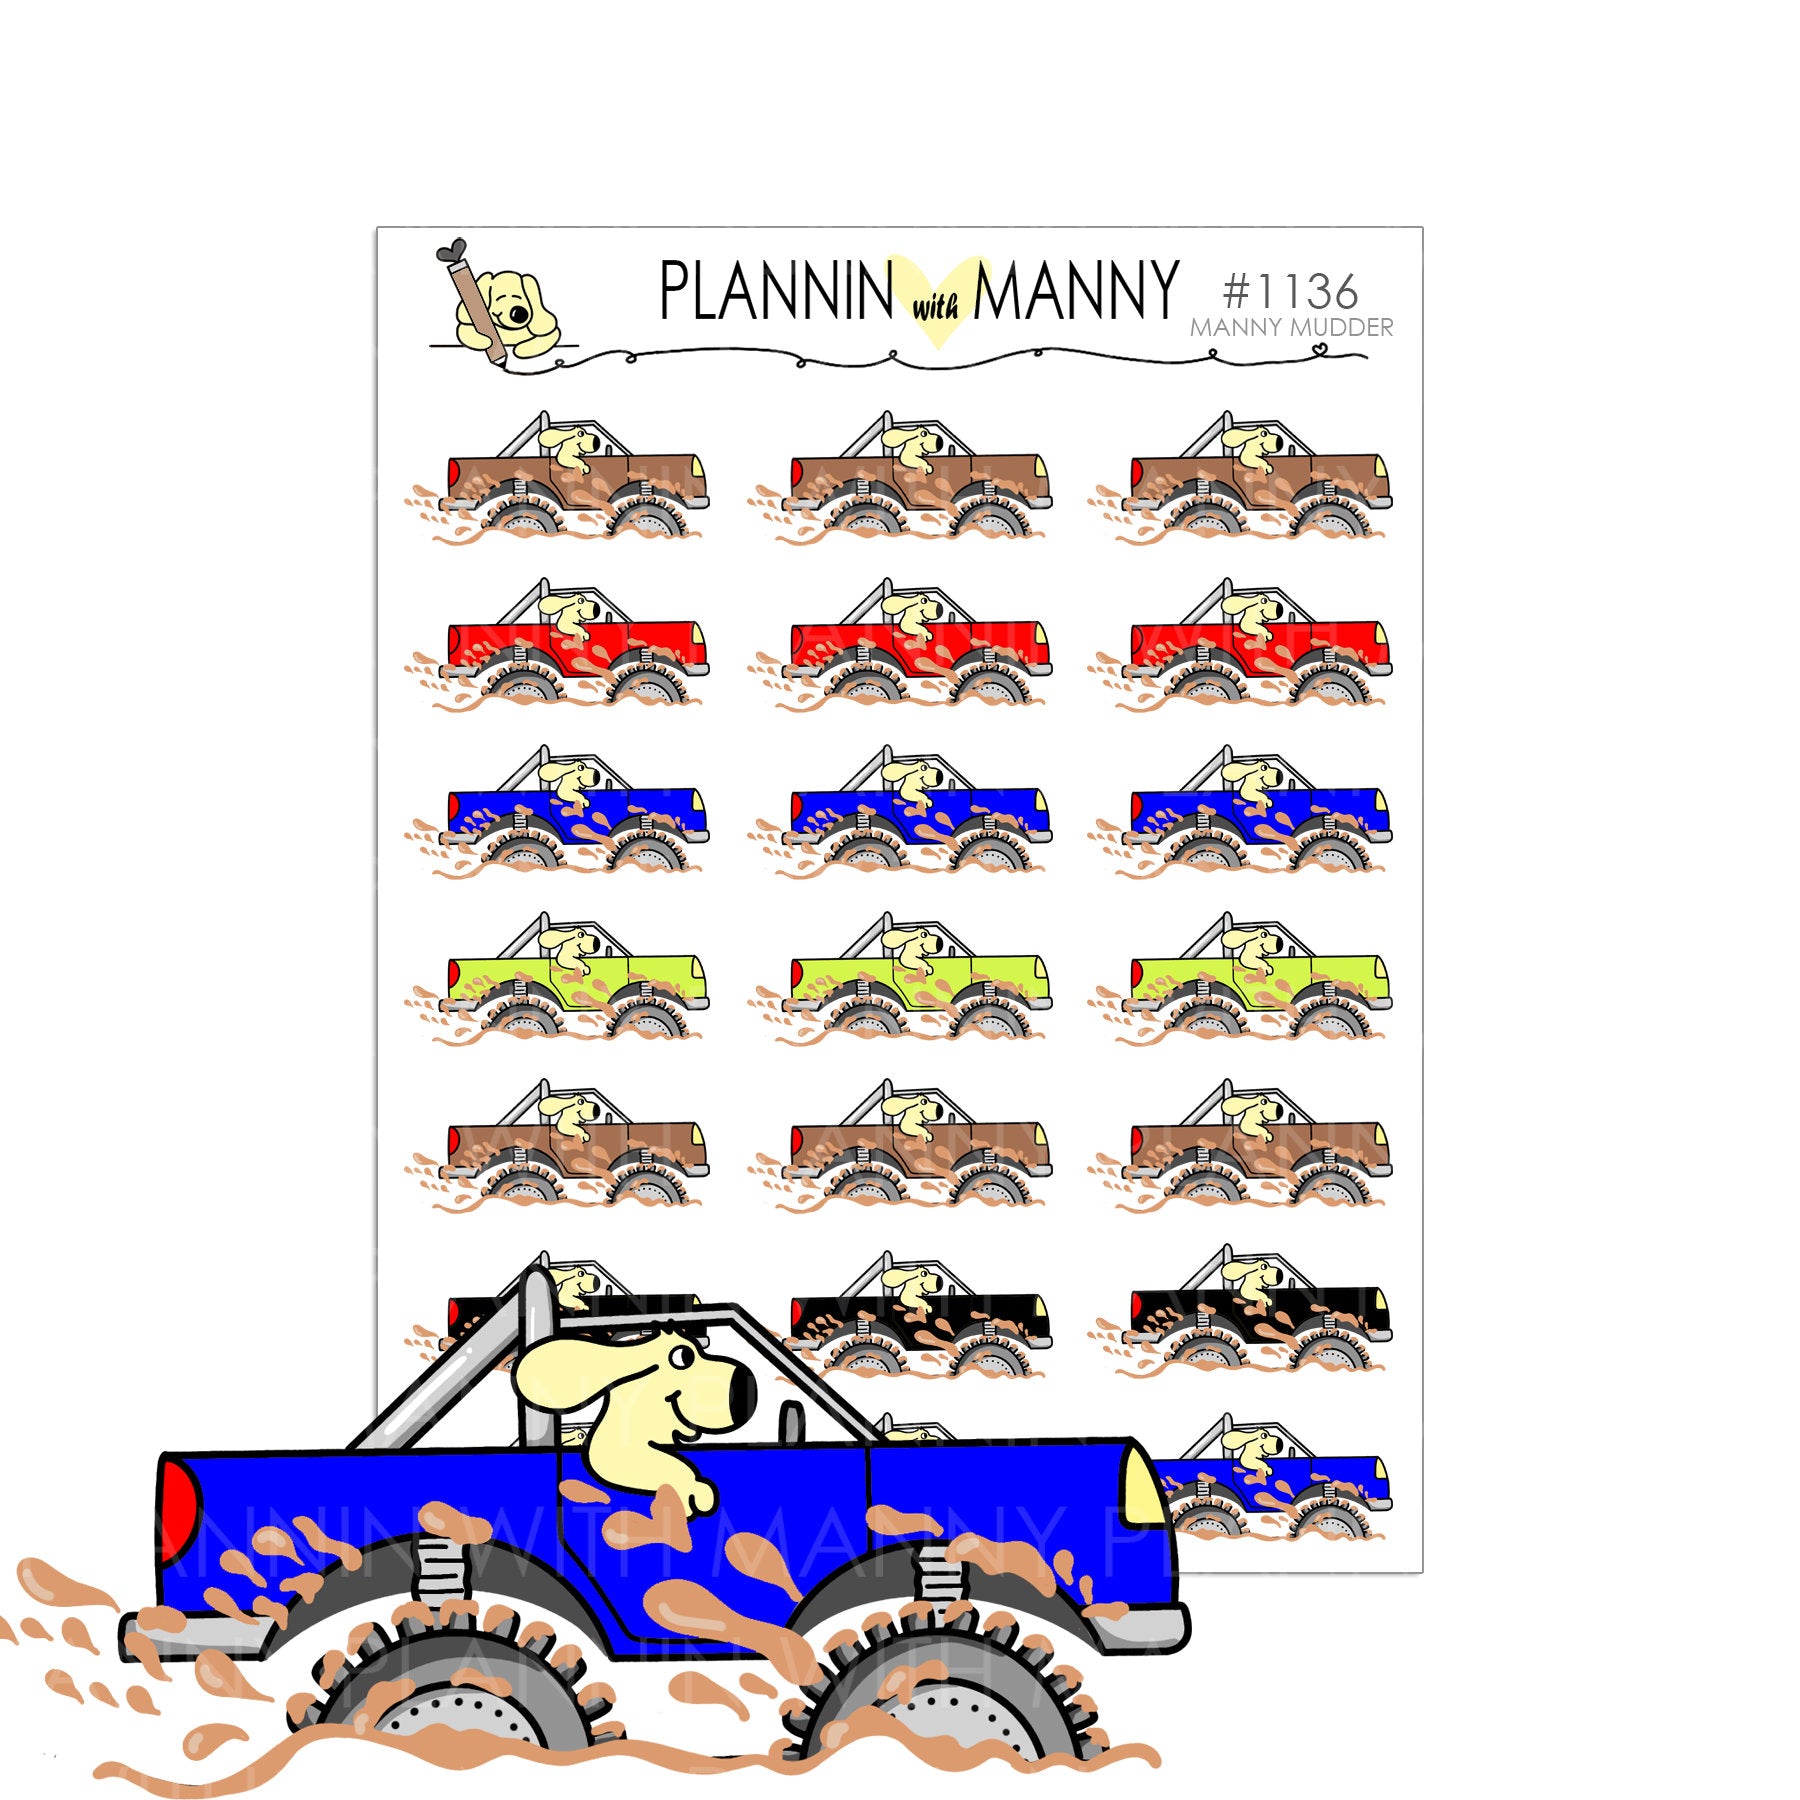 1136 MUDDER MANNY Planner Stickers